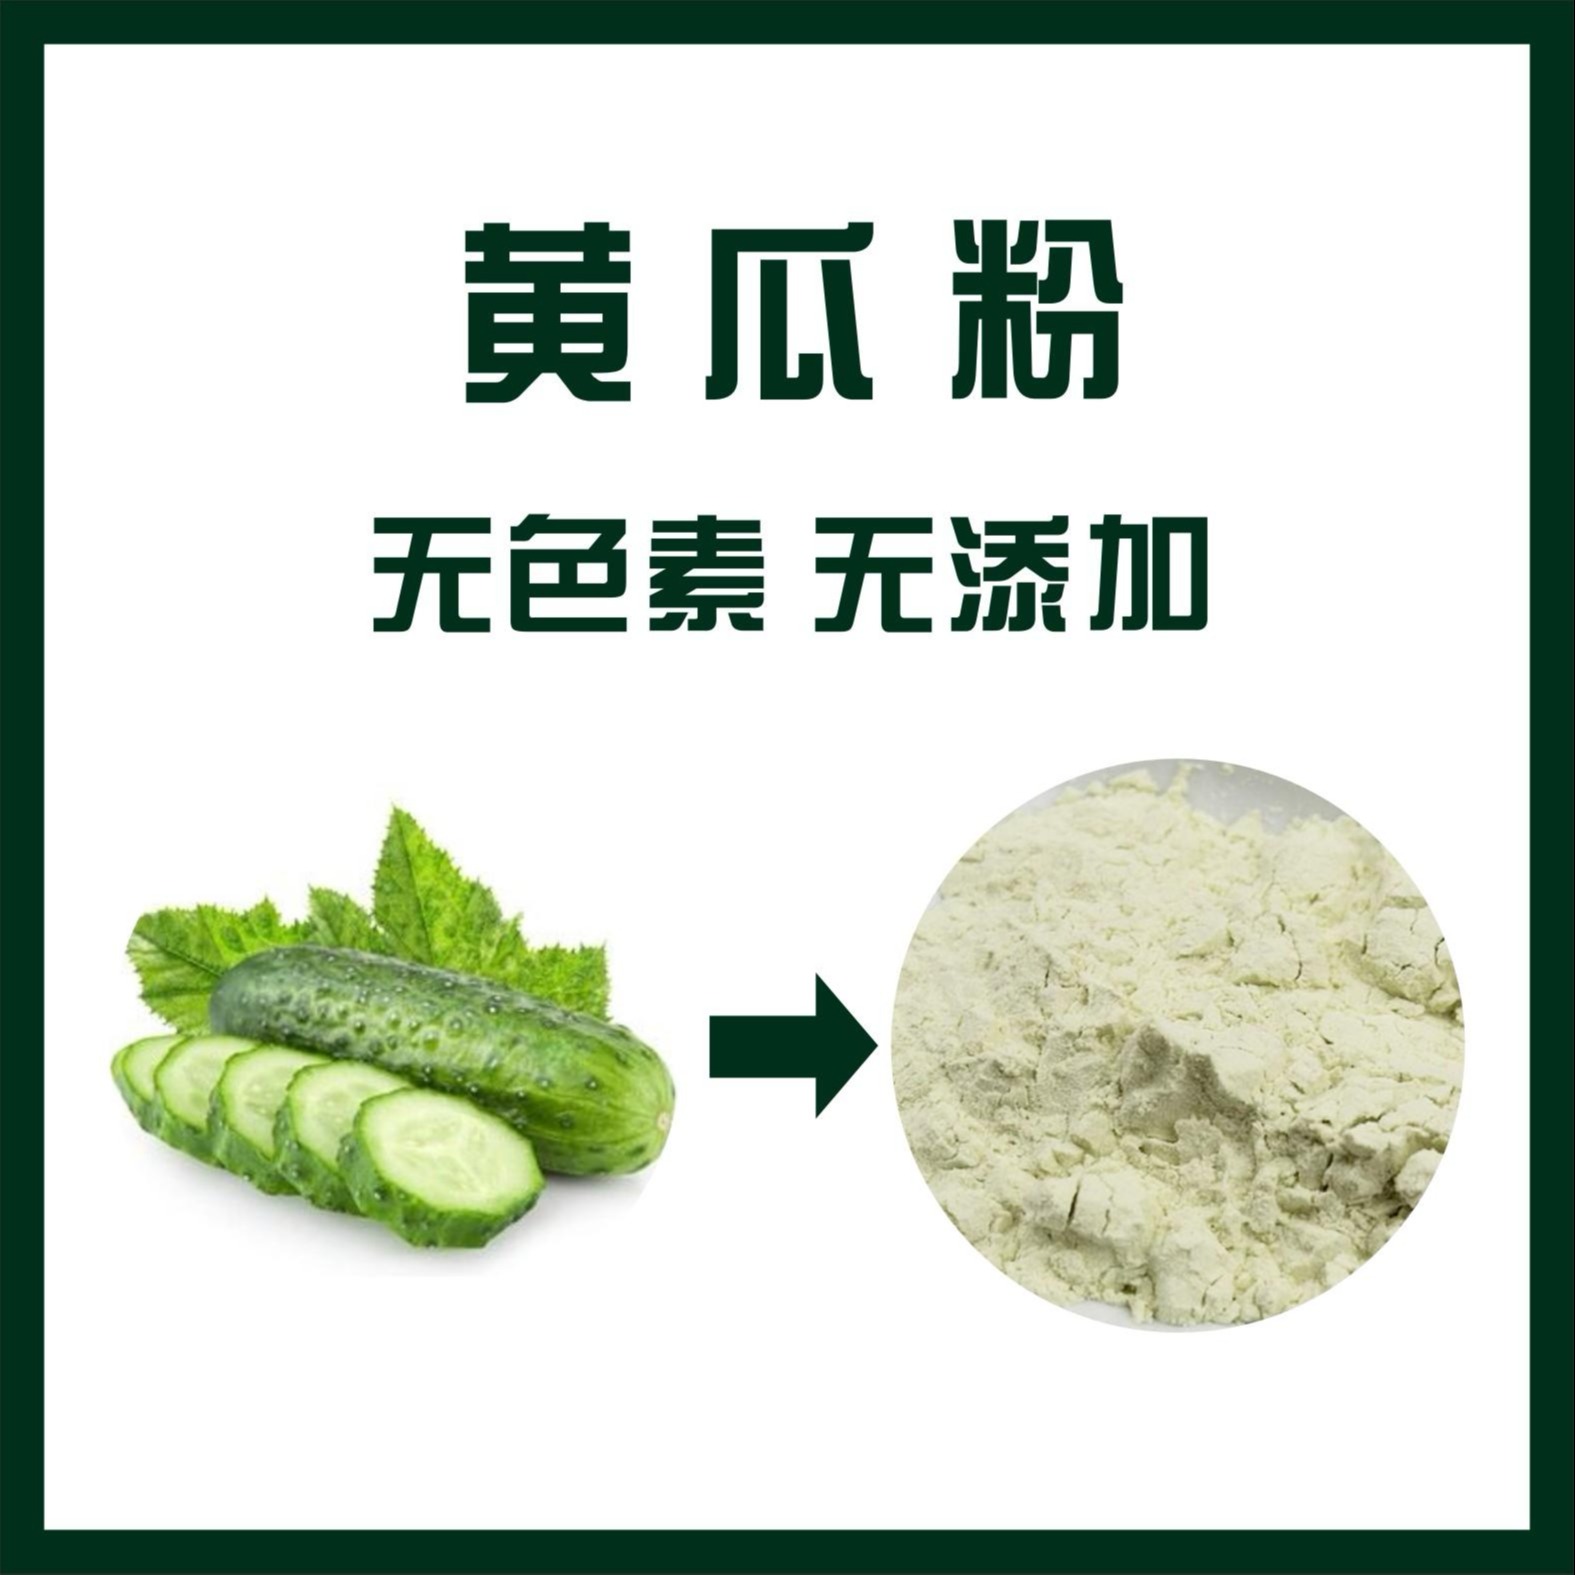 黄瓜粉,Cucumber powder